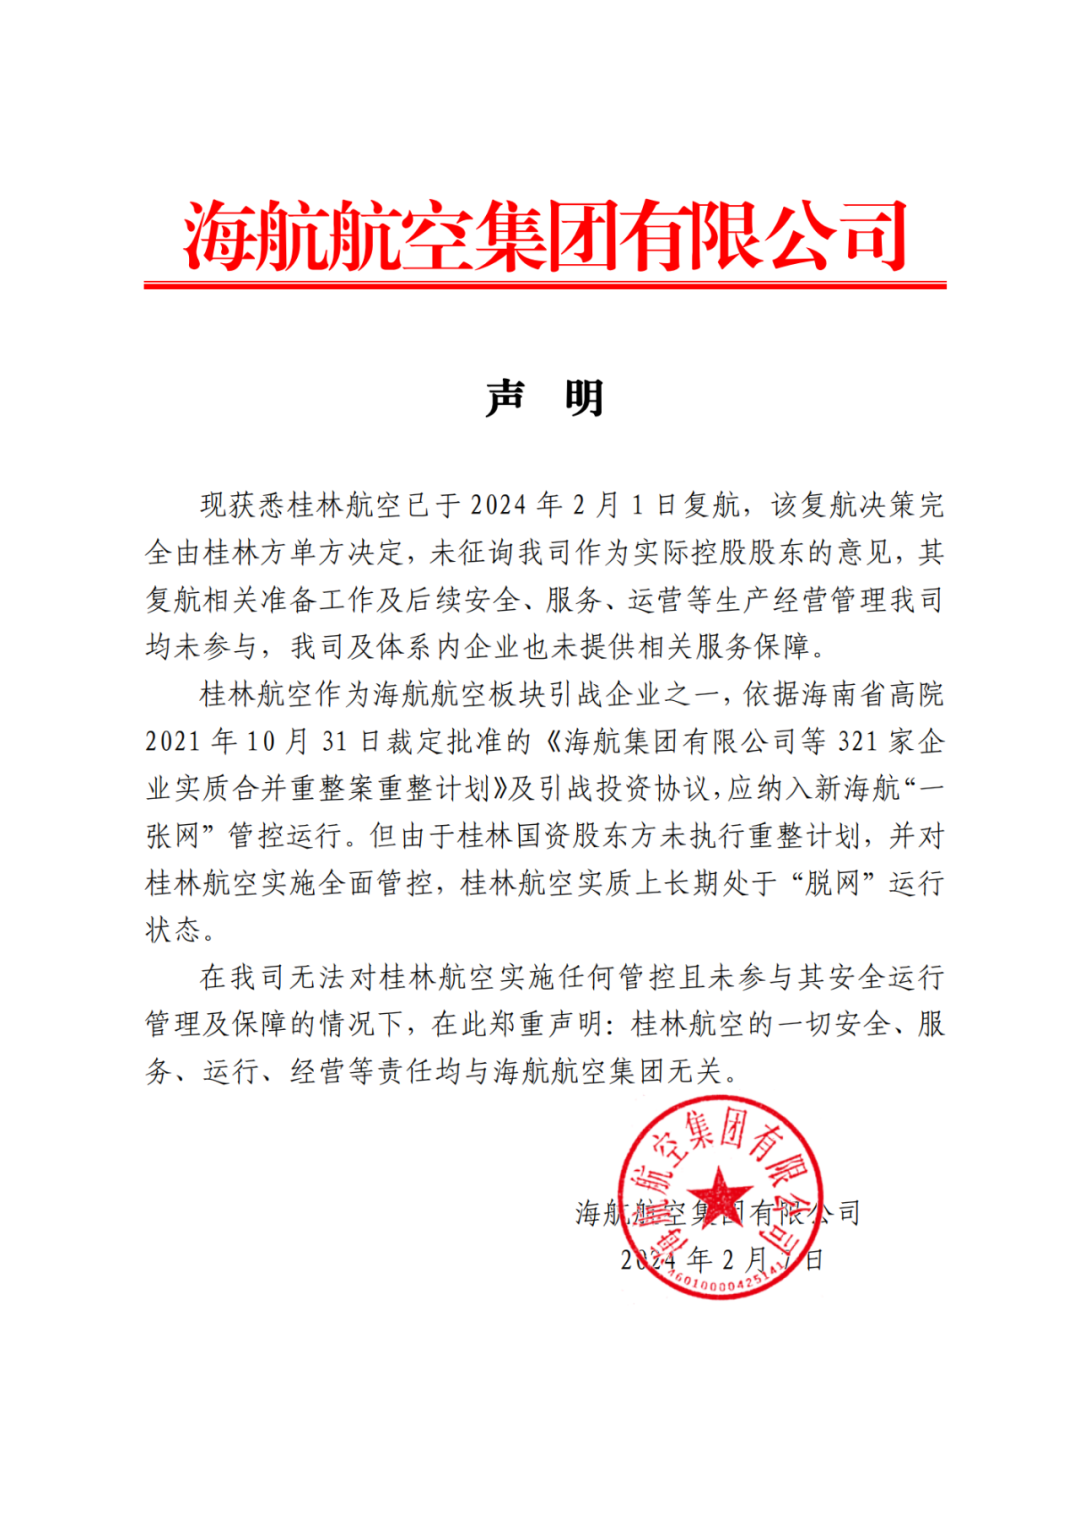 海航航空集团声明：桂林航空复航决策完全由桂林方单方决定，未征询公司意见